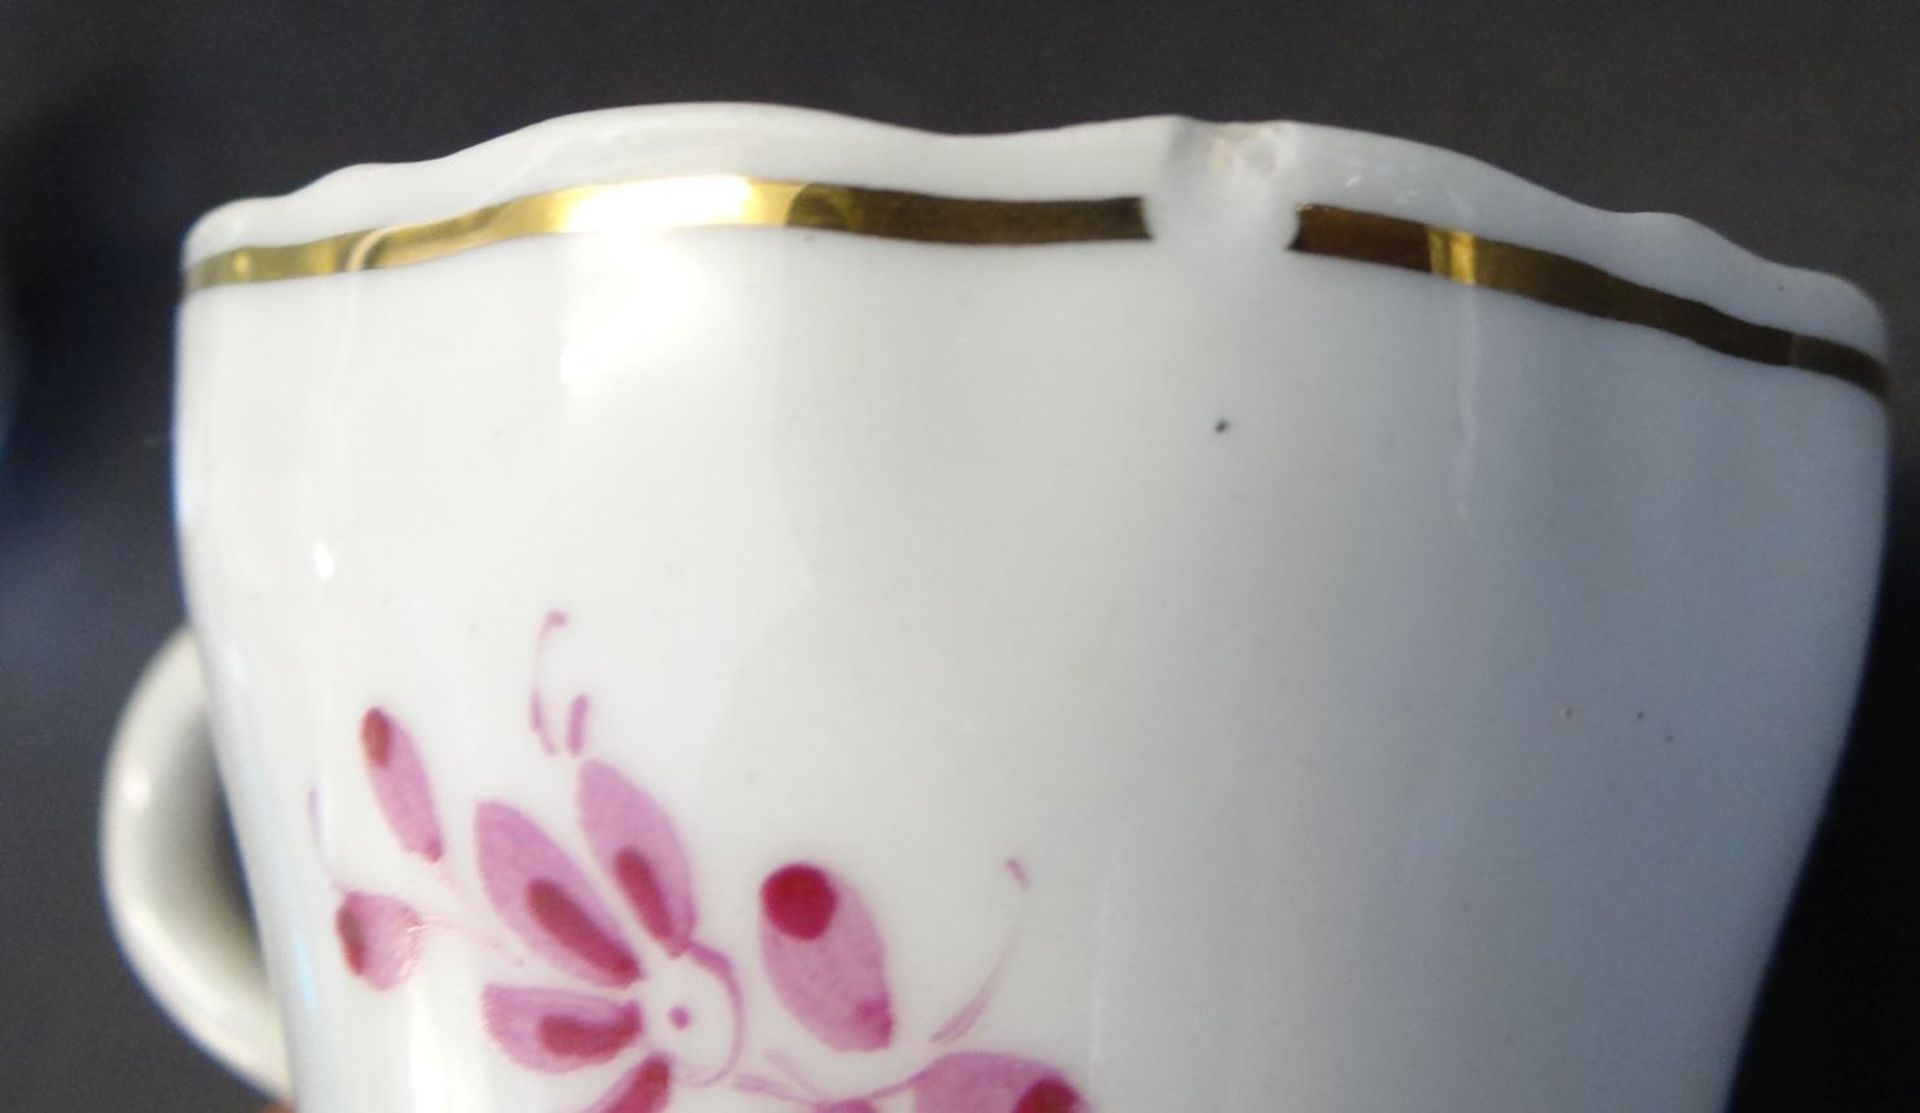 9 Teile Mokkageschirr "Plaue" Handgemalt, H-17 cm, Deckel-Rose und 2 Tassen minimal bestossen - Bild 3 aus 3